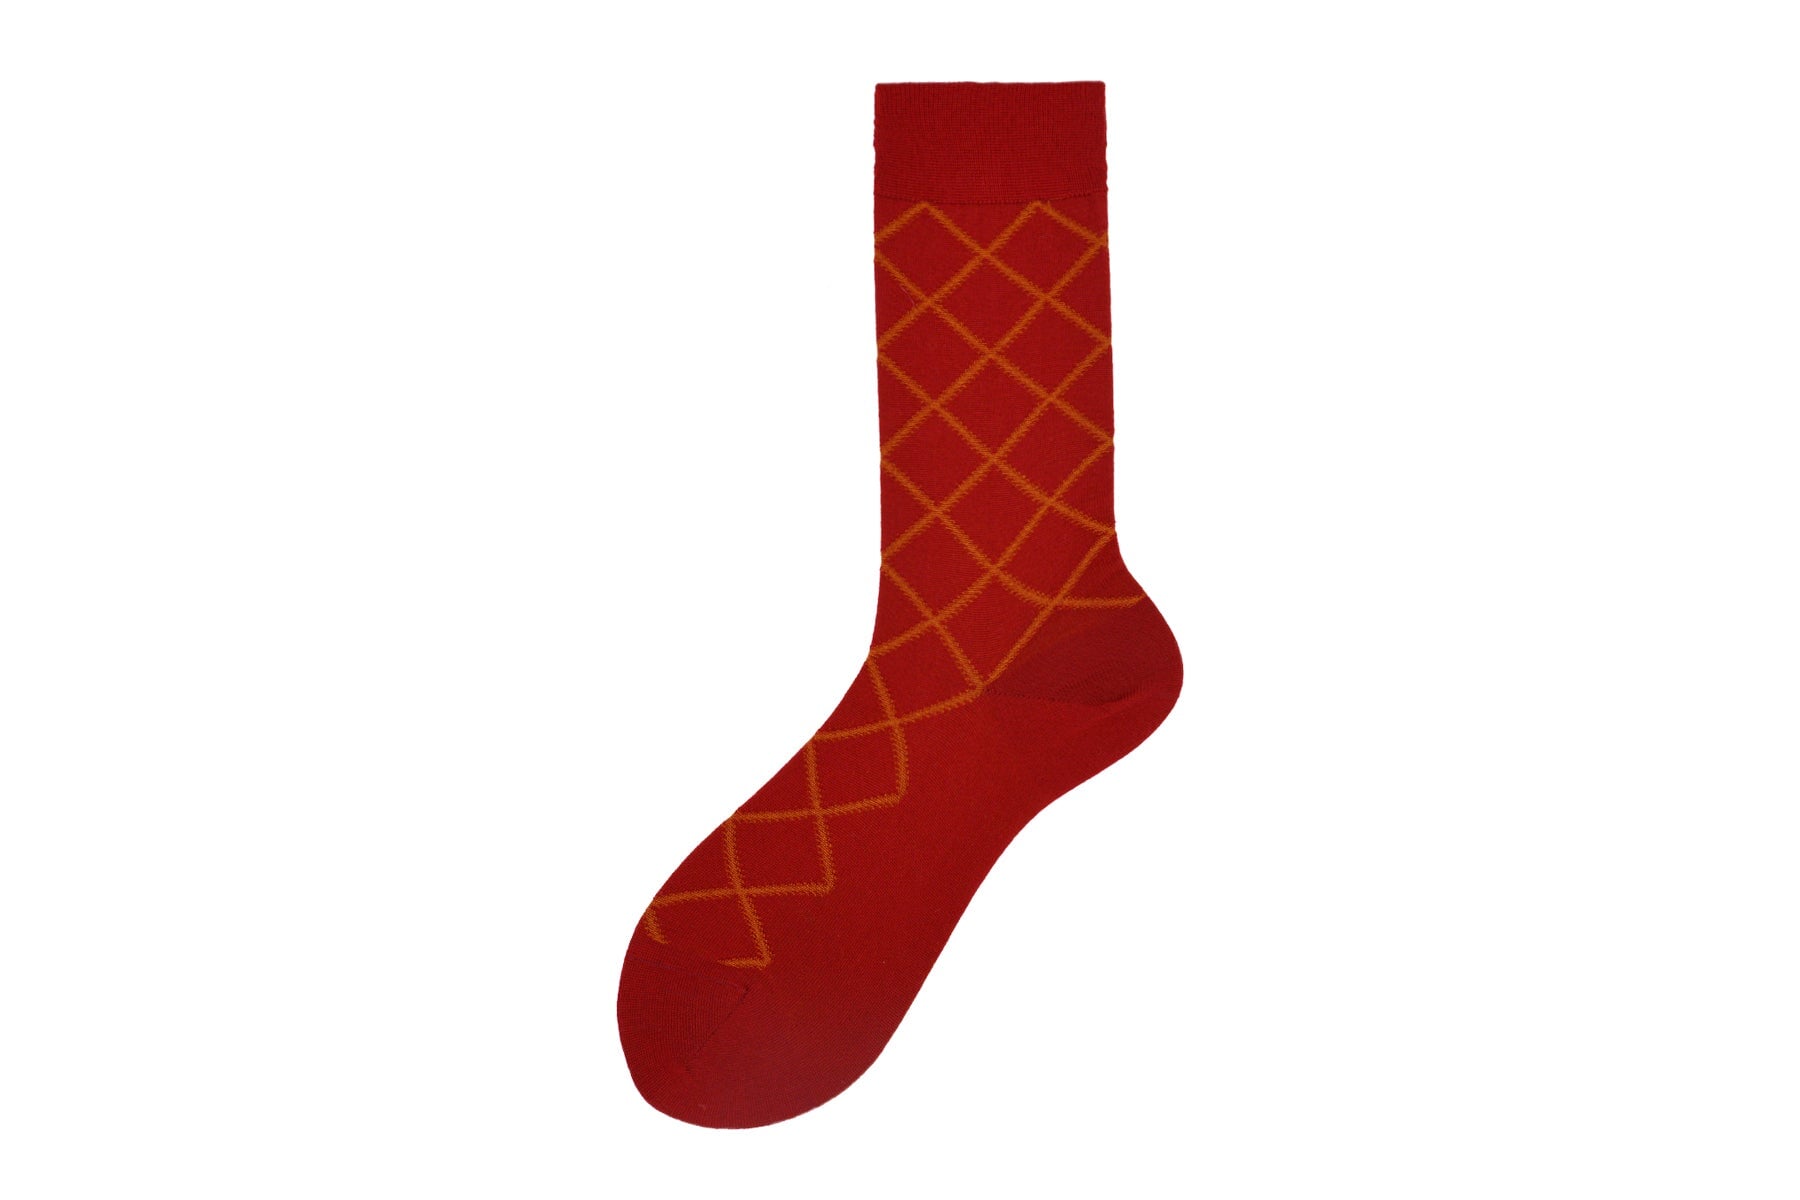 Herren Socken aus Merino Wolle in Rot- Chelsea Herren Socken Alto Milano 